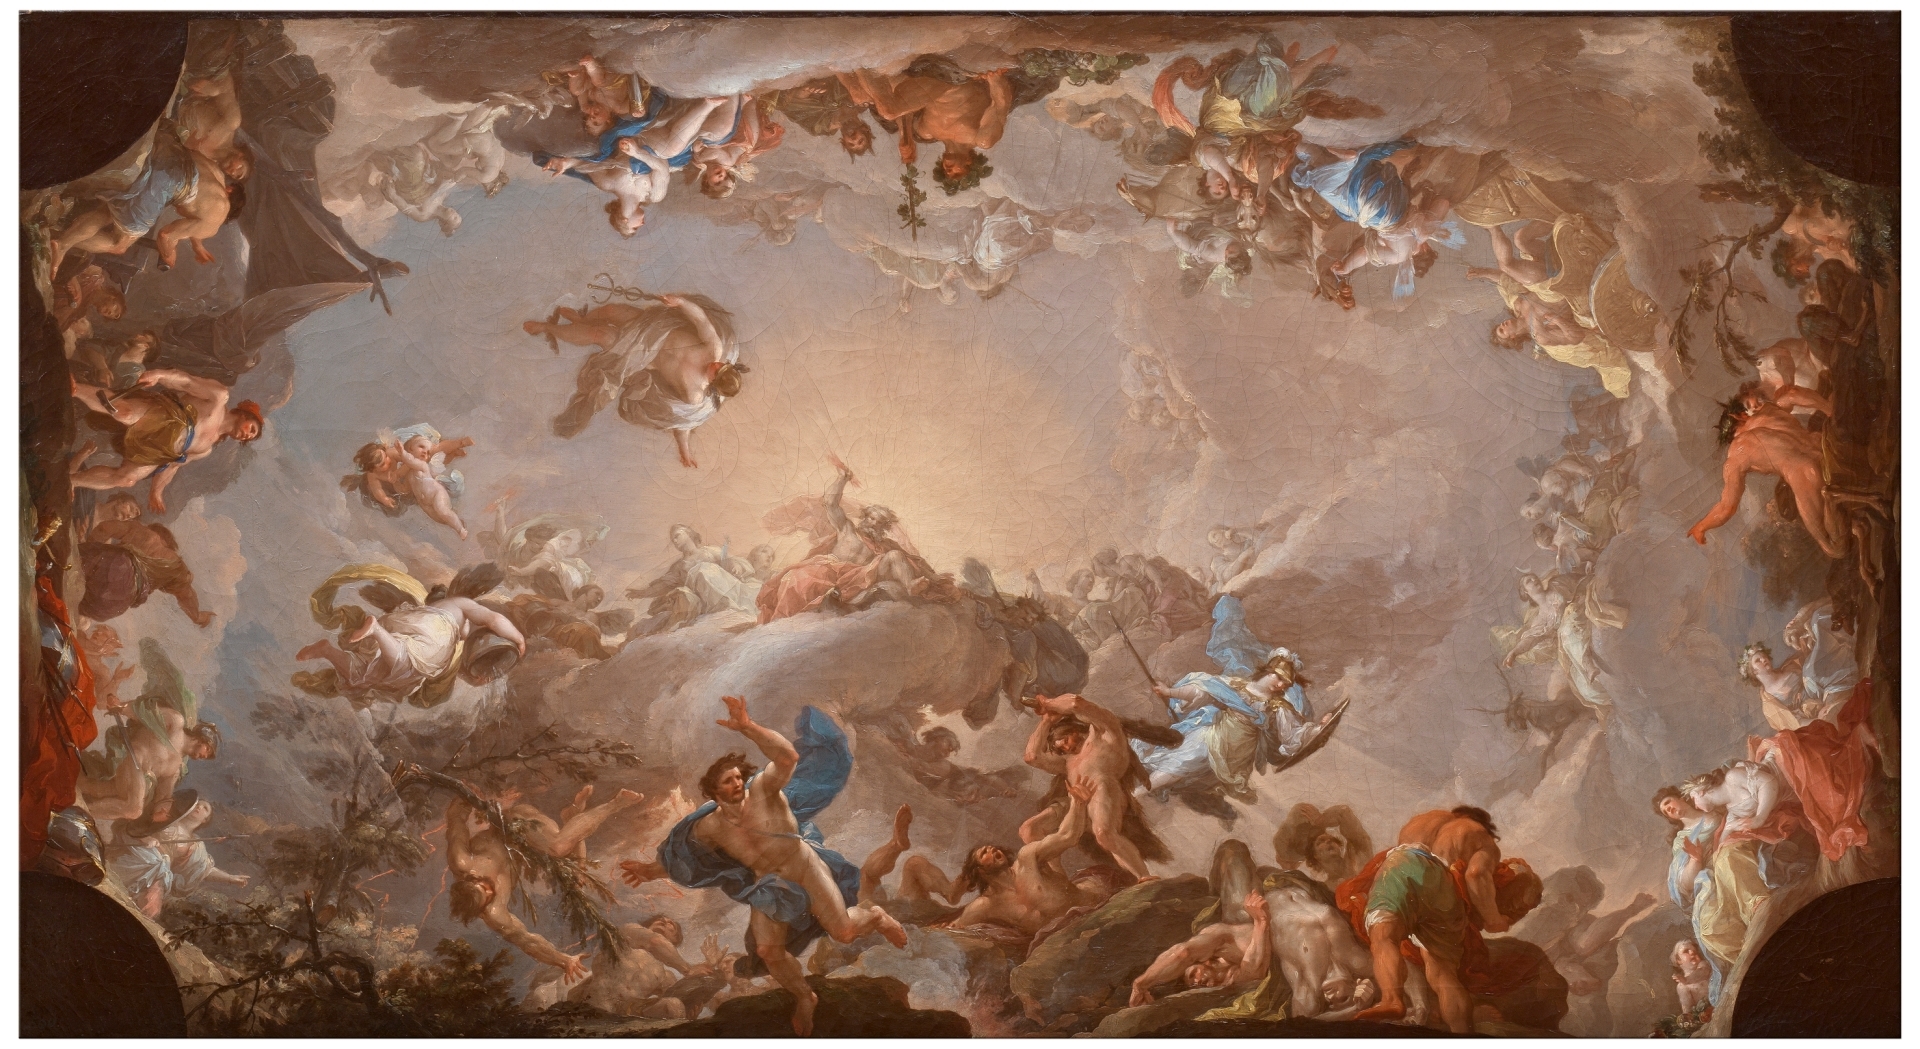 La caída de los gigantes asediando el Olimpo, 1764